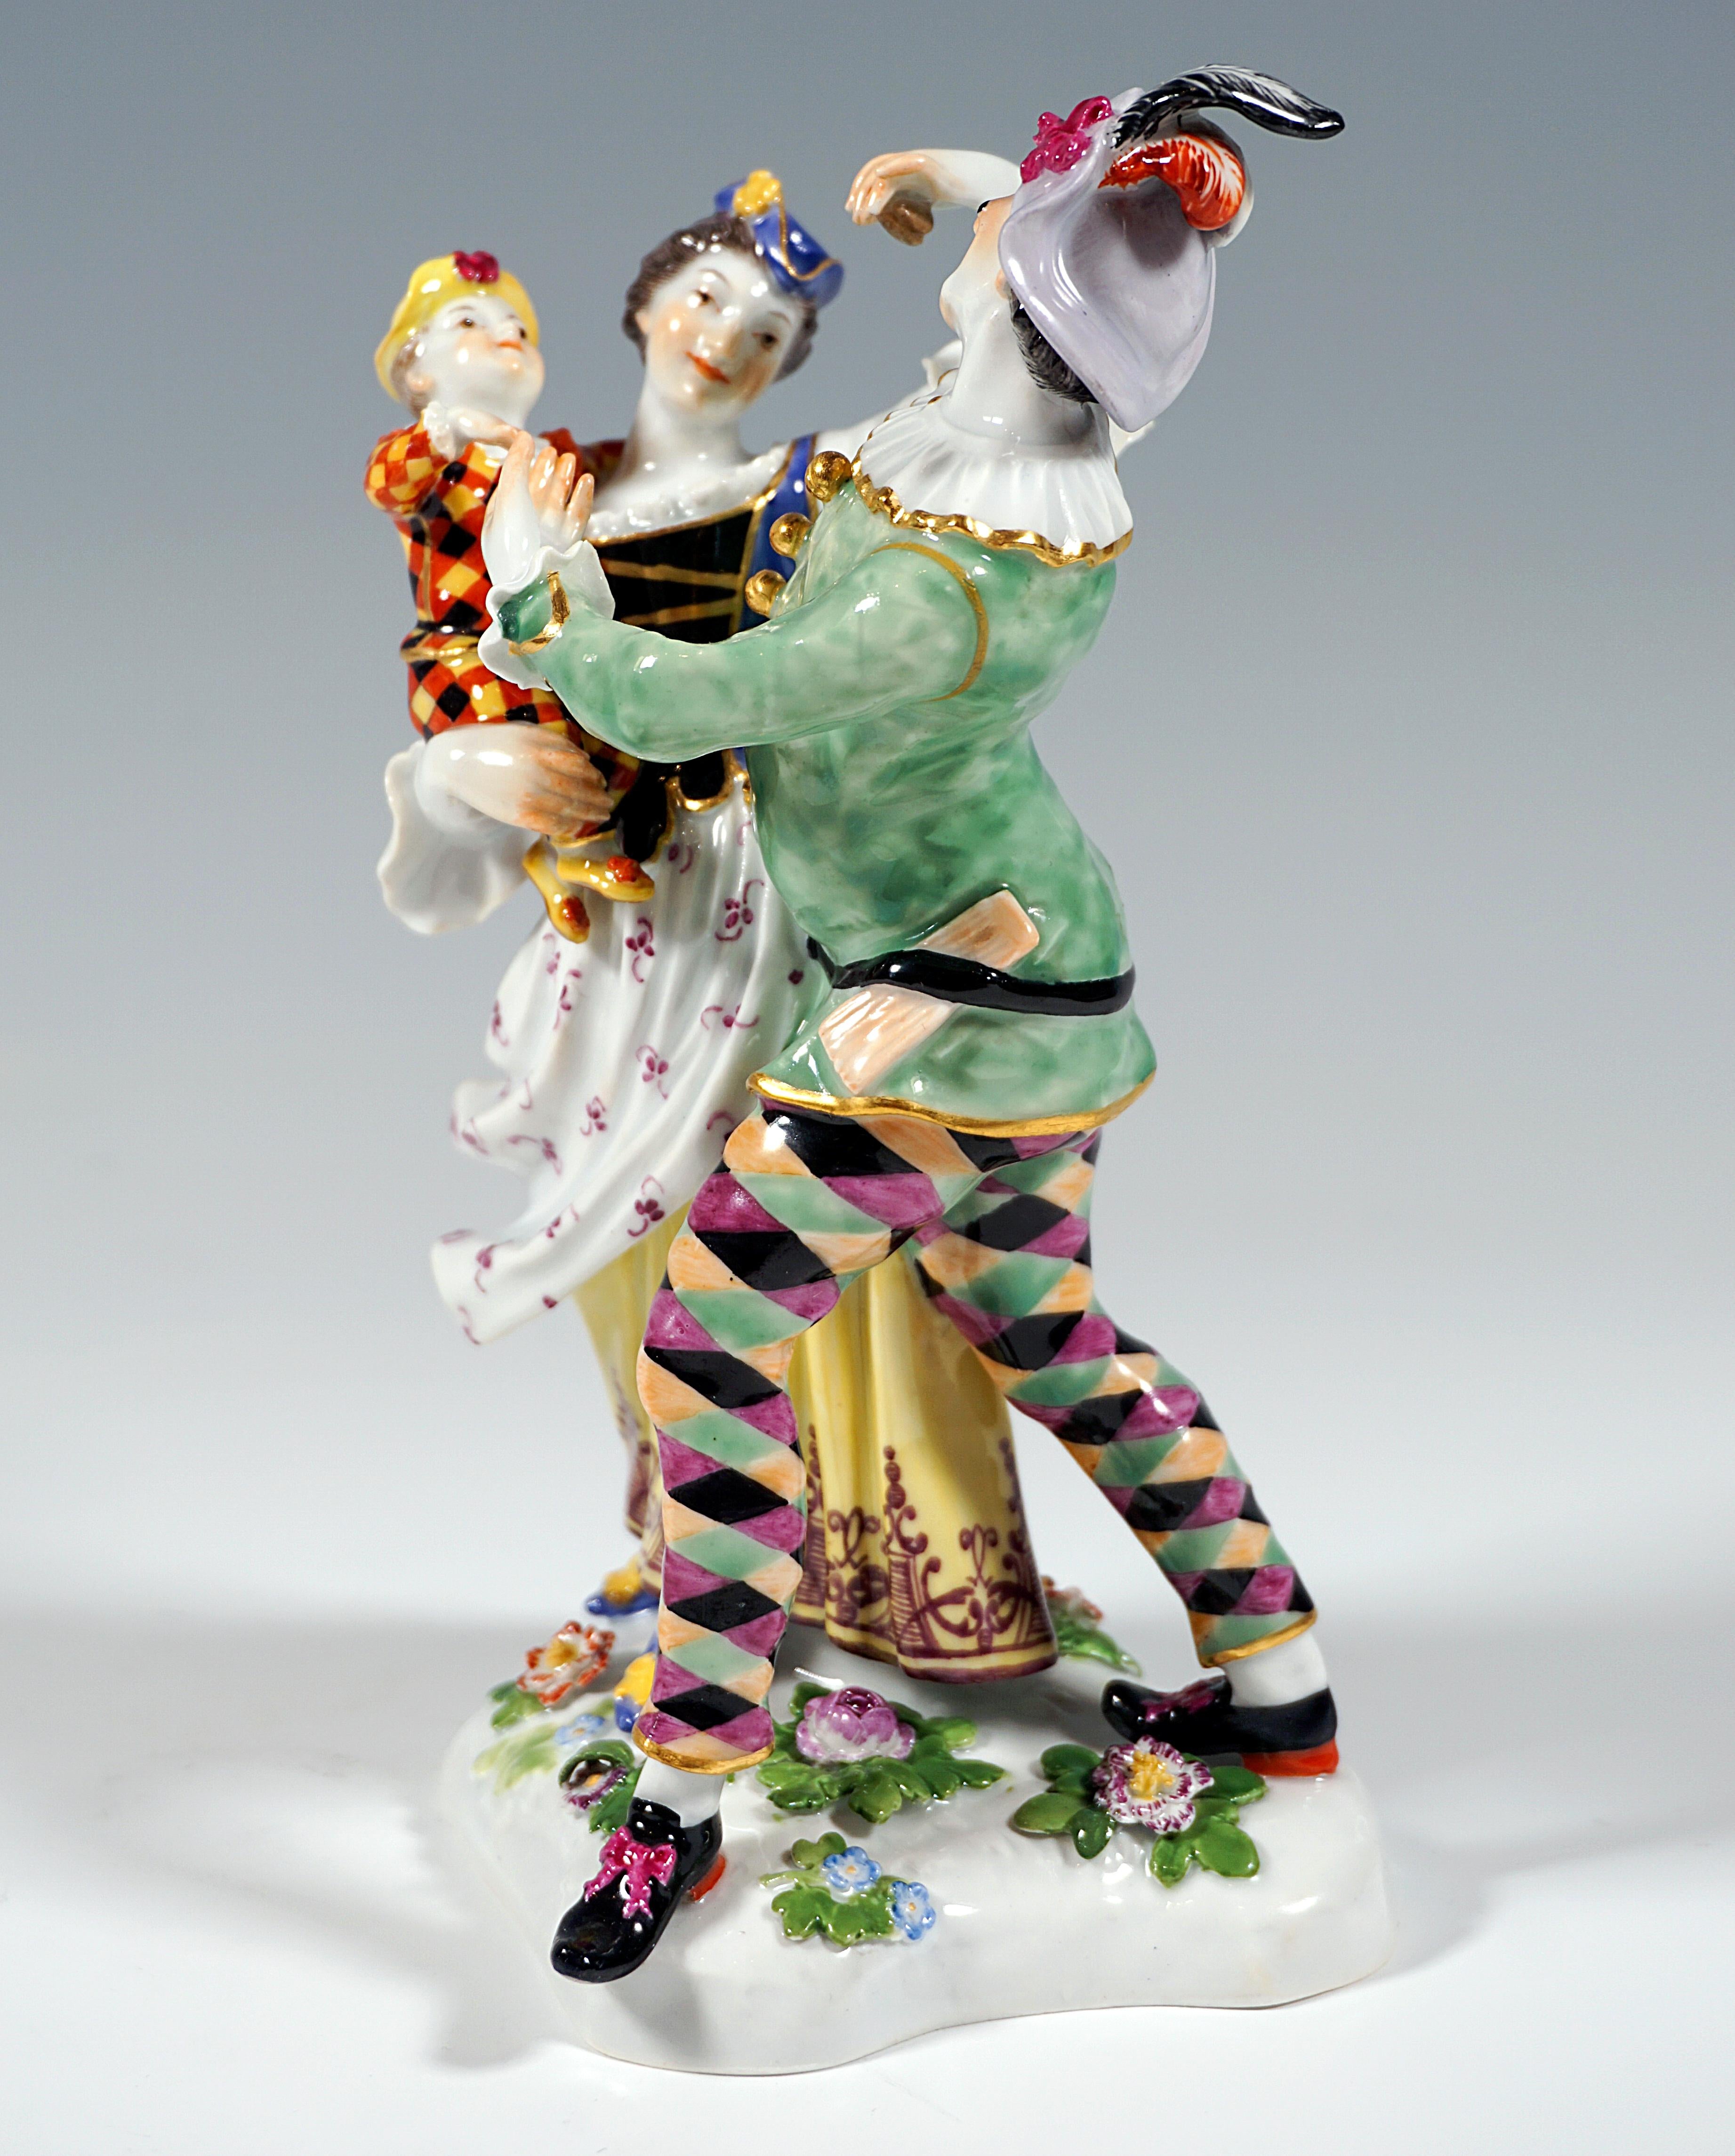 Sehr seltene Commedia dell'Arte Figurengruppe aus dem 19. Jahrhundert:
Harlekin und Columbine mit Kind tanzen im Kreis: Harlekin in grüner Jacke mit goldenen Knöpfen und weißer Halskrause und bunter Rautenhose, auf dem Kopf einen Federhut, die